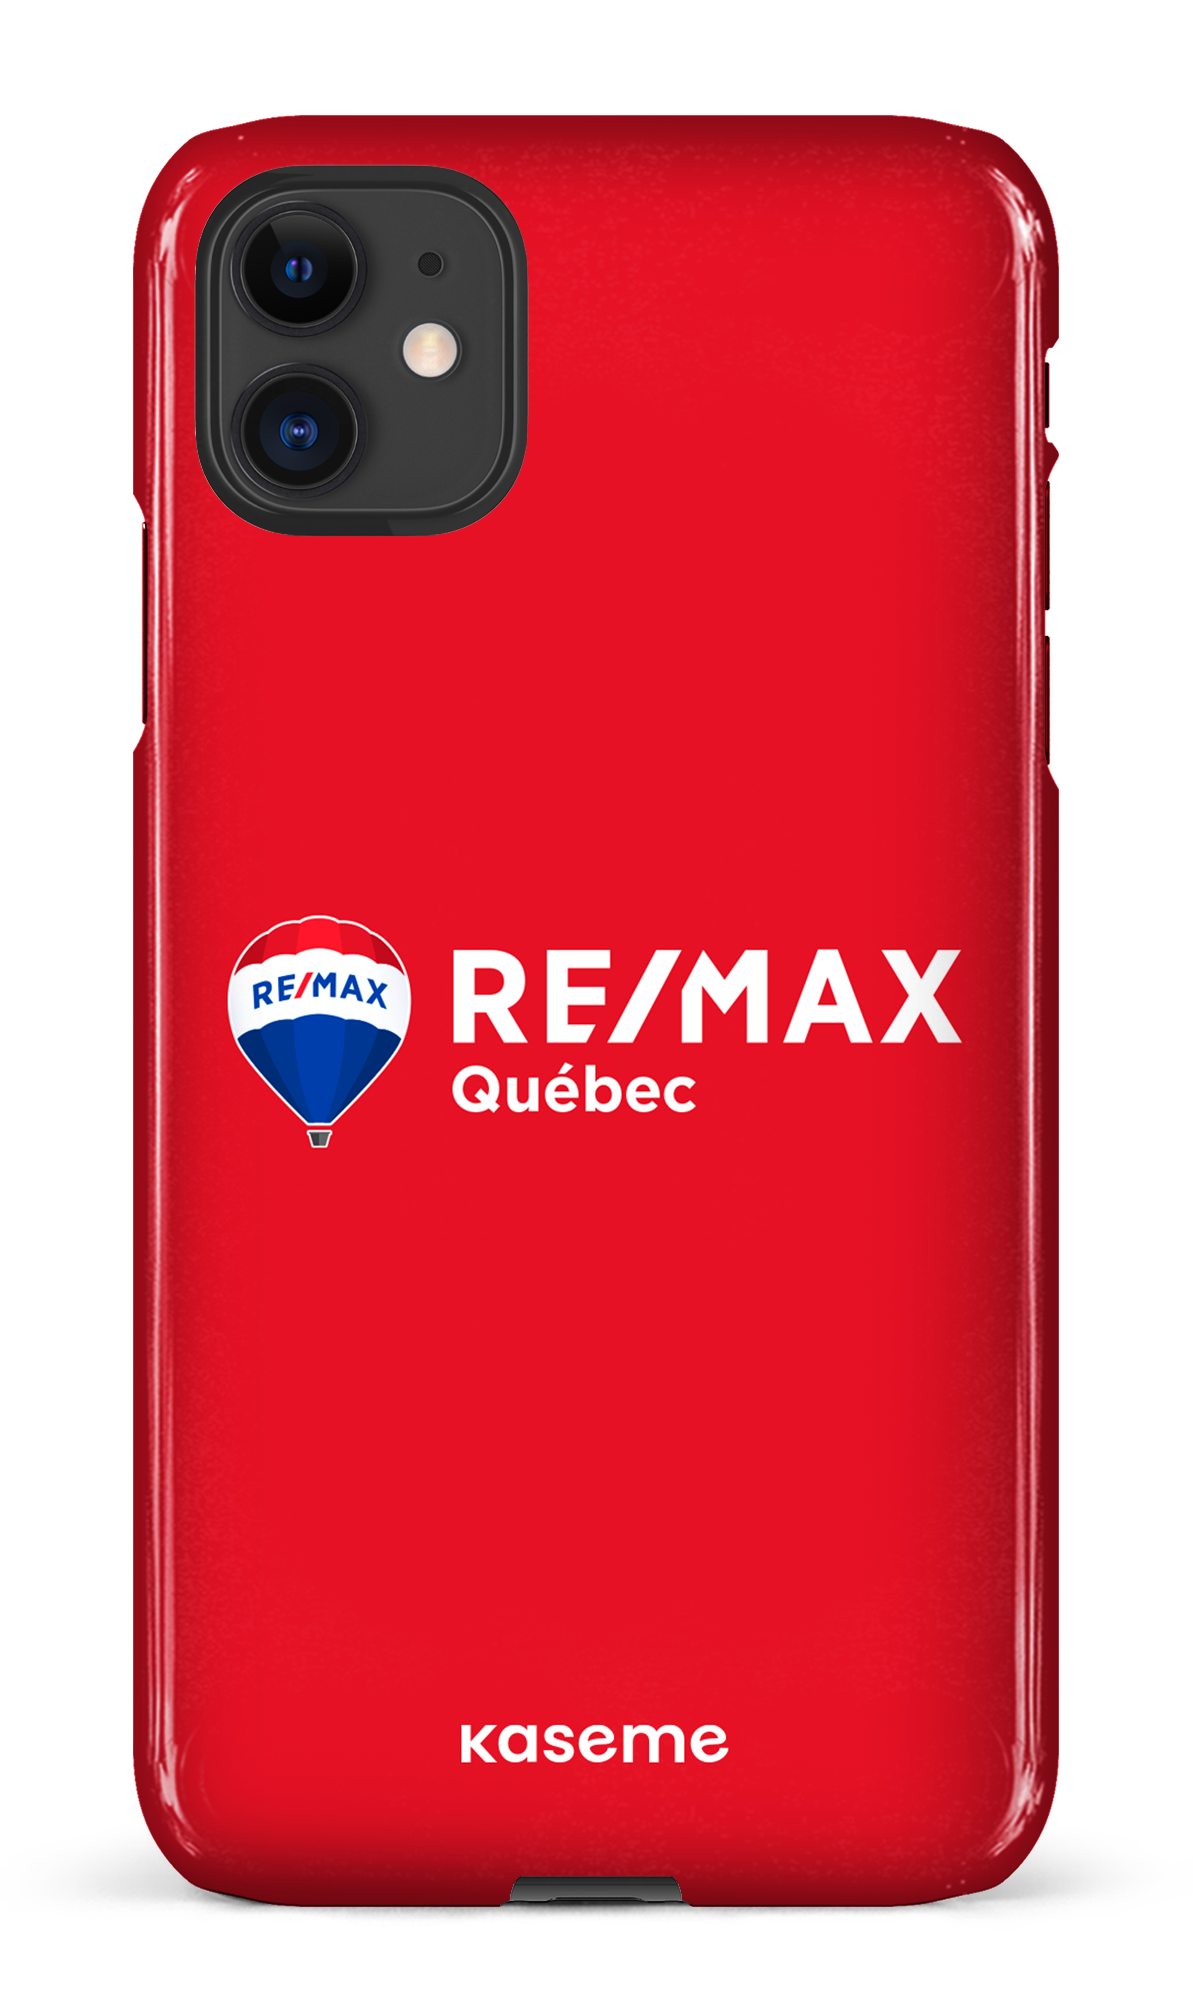 Remax Québec Rouge - iPhone 11